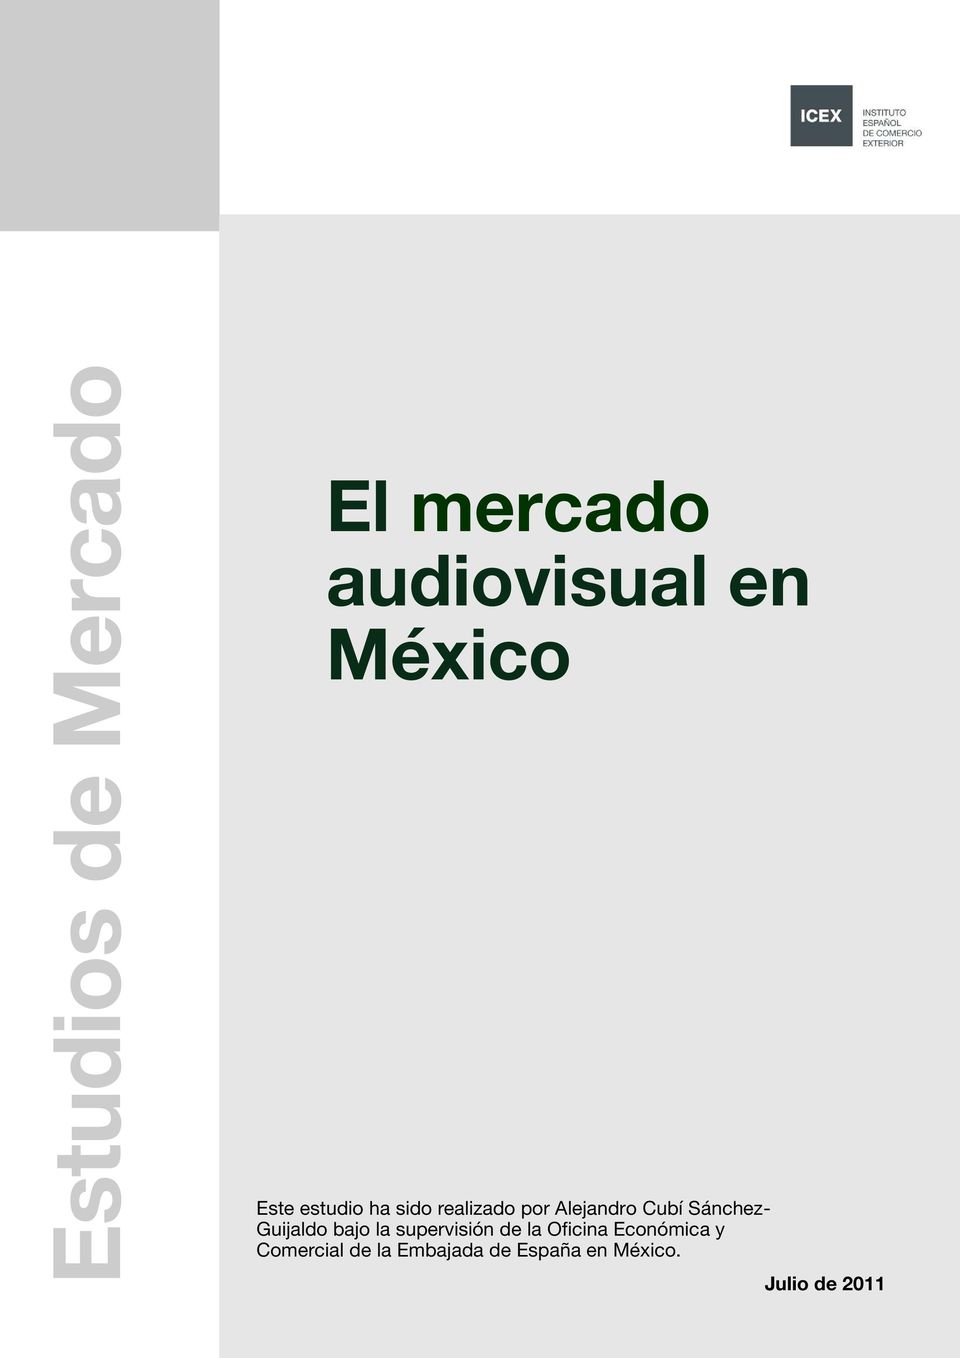 Oficina Económica y Comercial de la Embajada de España en México.